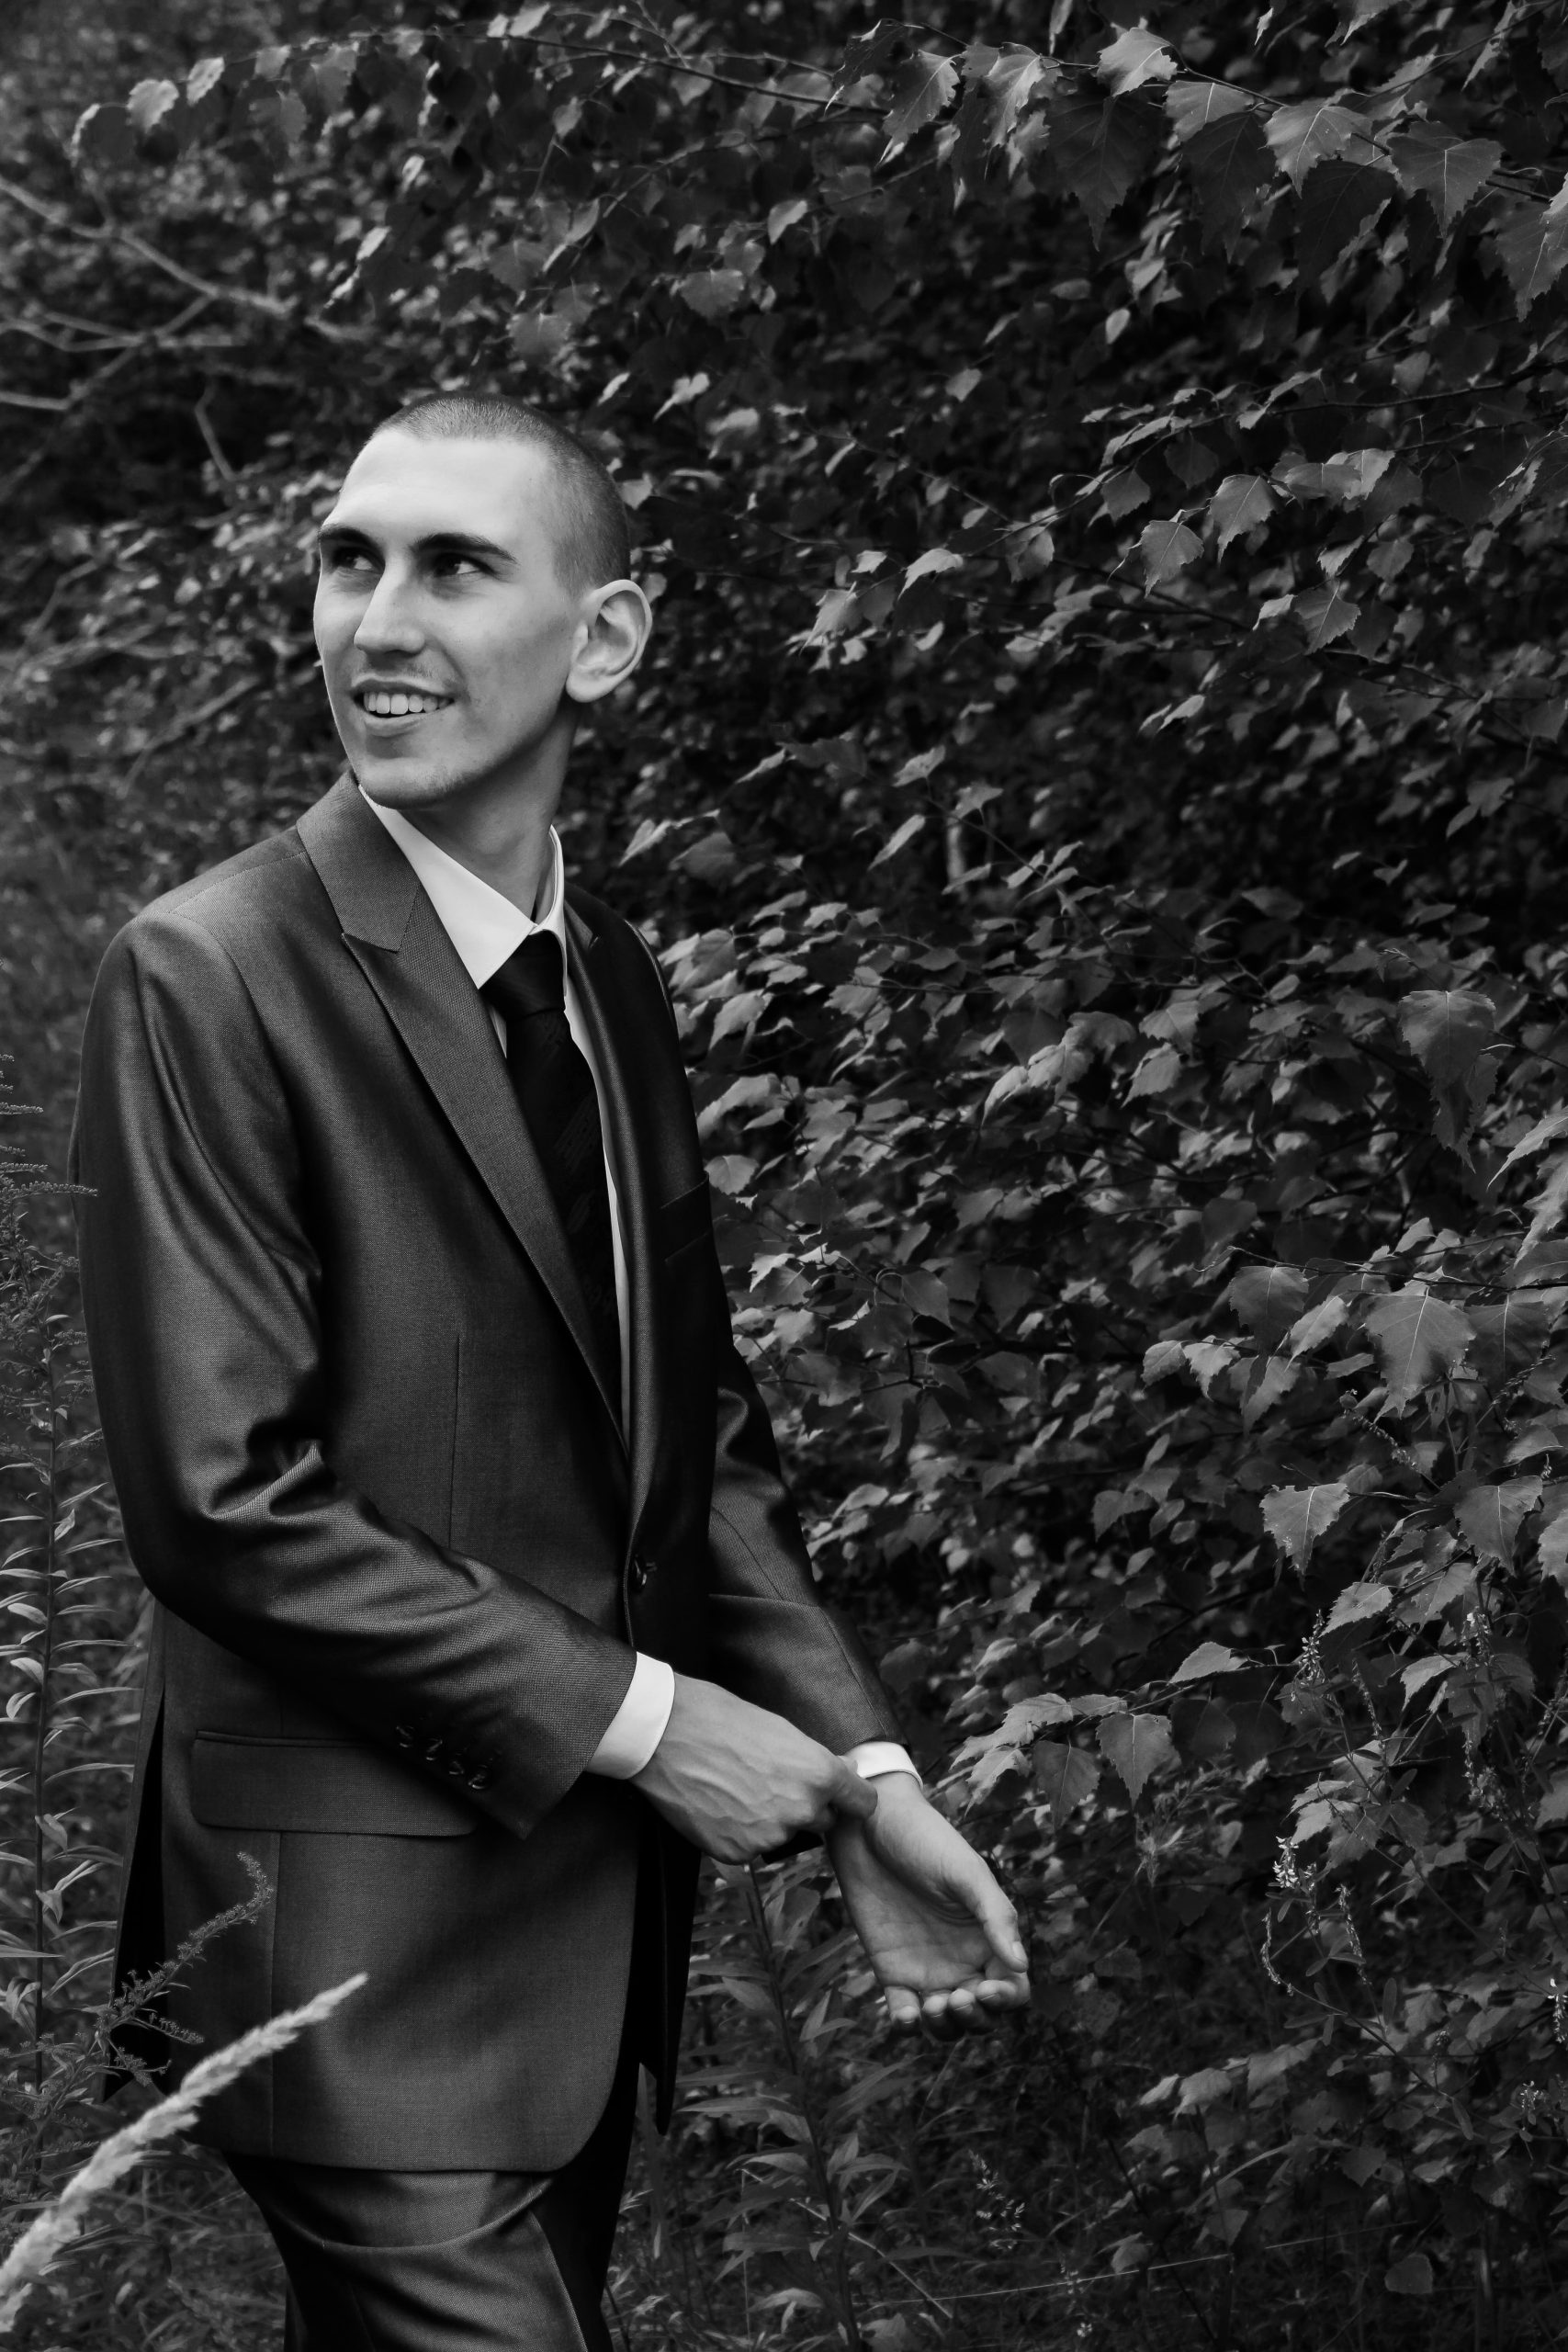 Businessfotografie mit Anzug in Schwarz/Weiß.